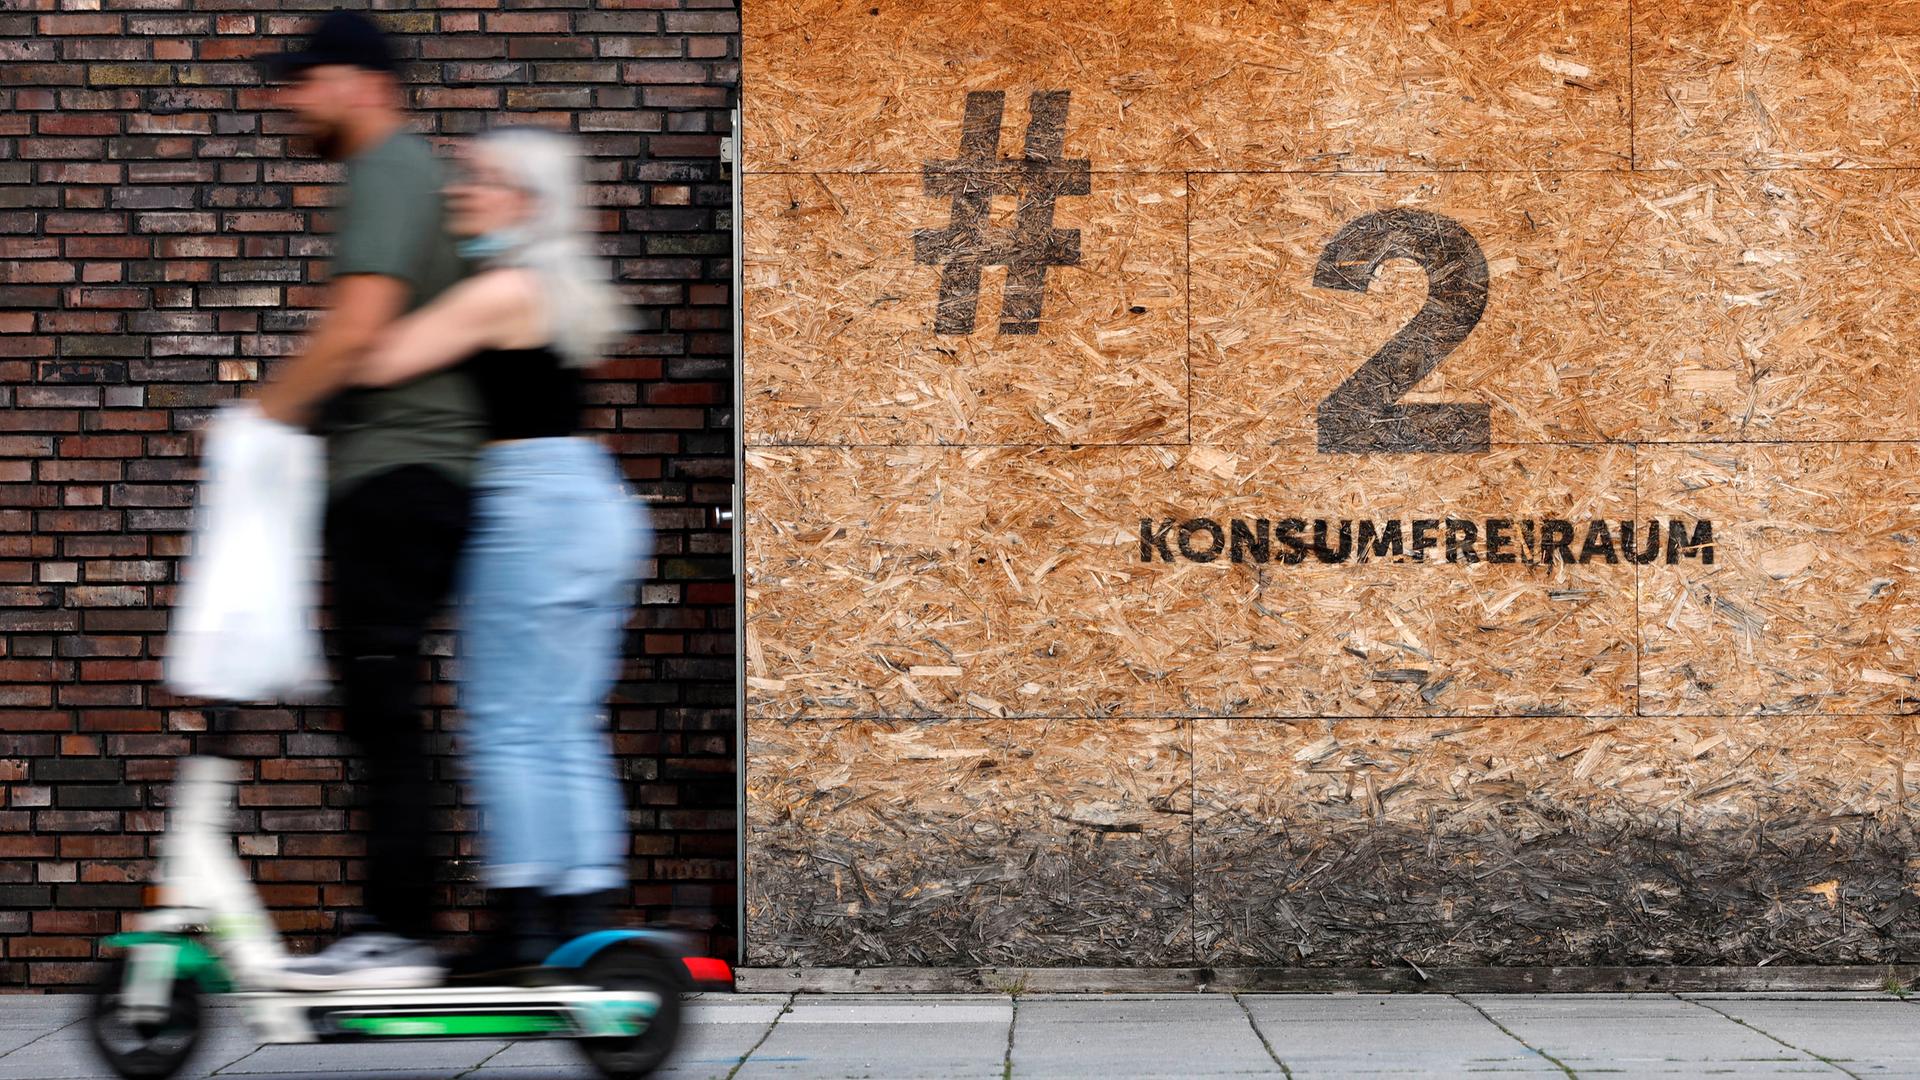 Eine Holzbox mit der Aufschrift 'Konsumfreiraum' am Neumarkt in Köln. Die Holzboxen wurden von der Stadt Köln an einigen Ecken aufgestellt, wo Drogenabhängige vorher versteckt ihre Drogen konsumierten. (Themenbild, Symbolbild) Köln, 18.09.2021